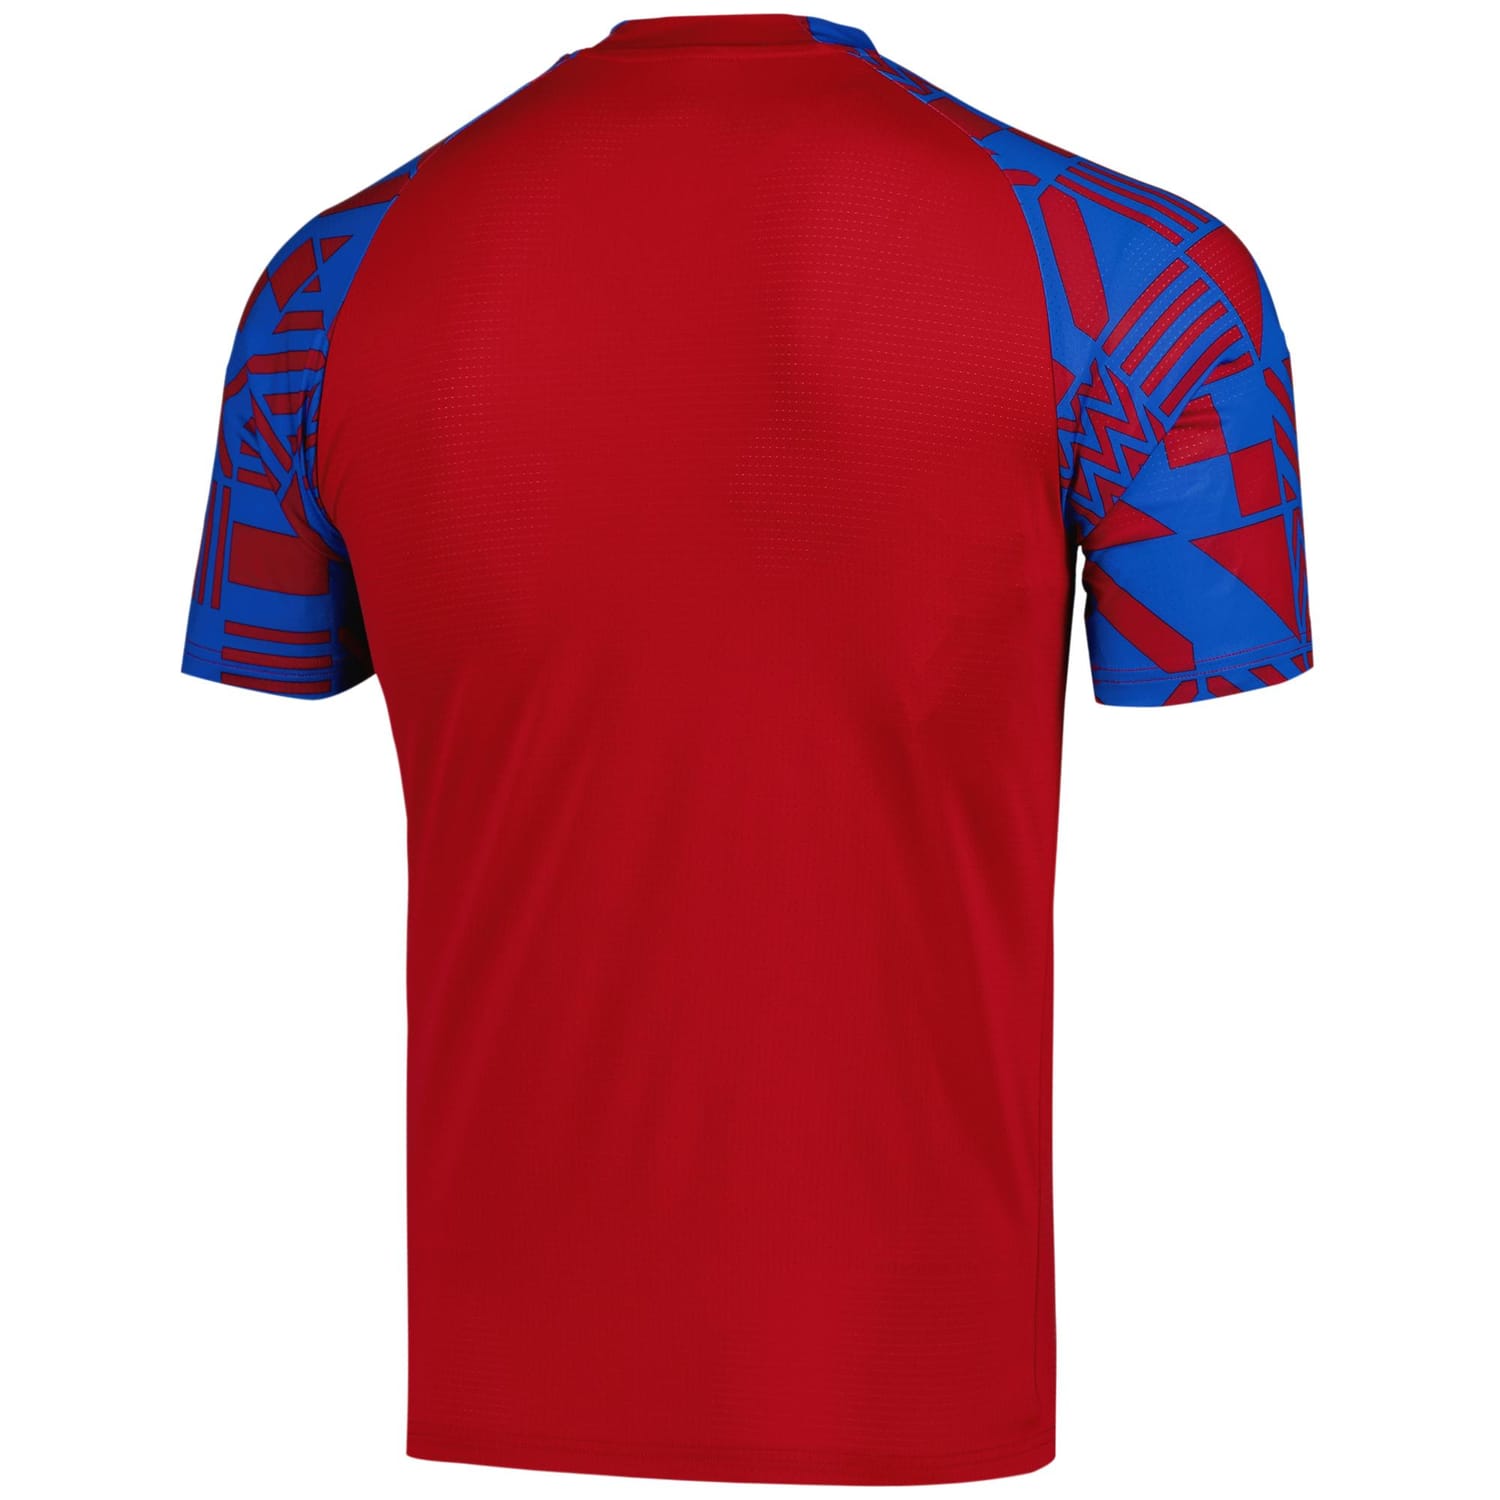 Czech Republic National Team Pre-Match Jersey Shirt Red for Men